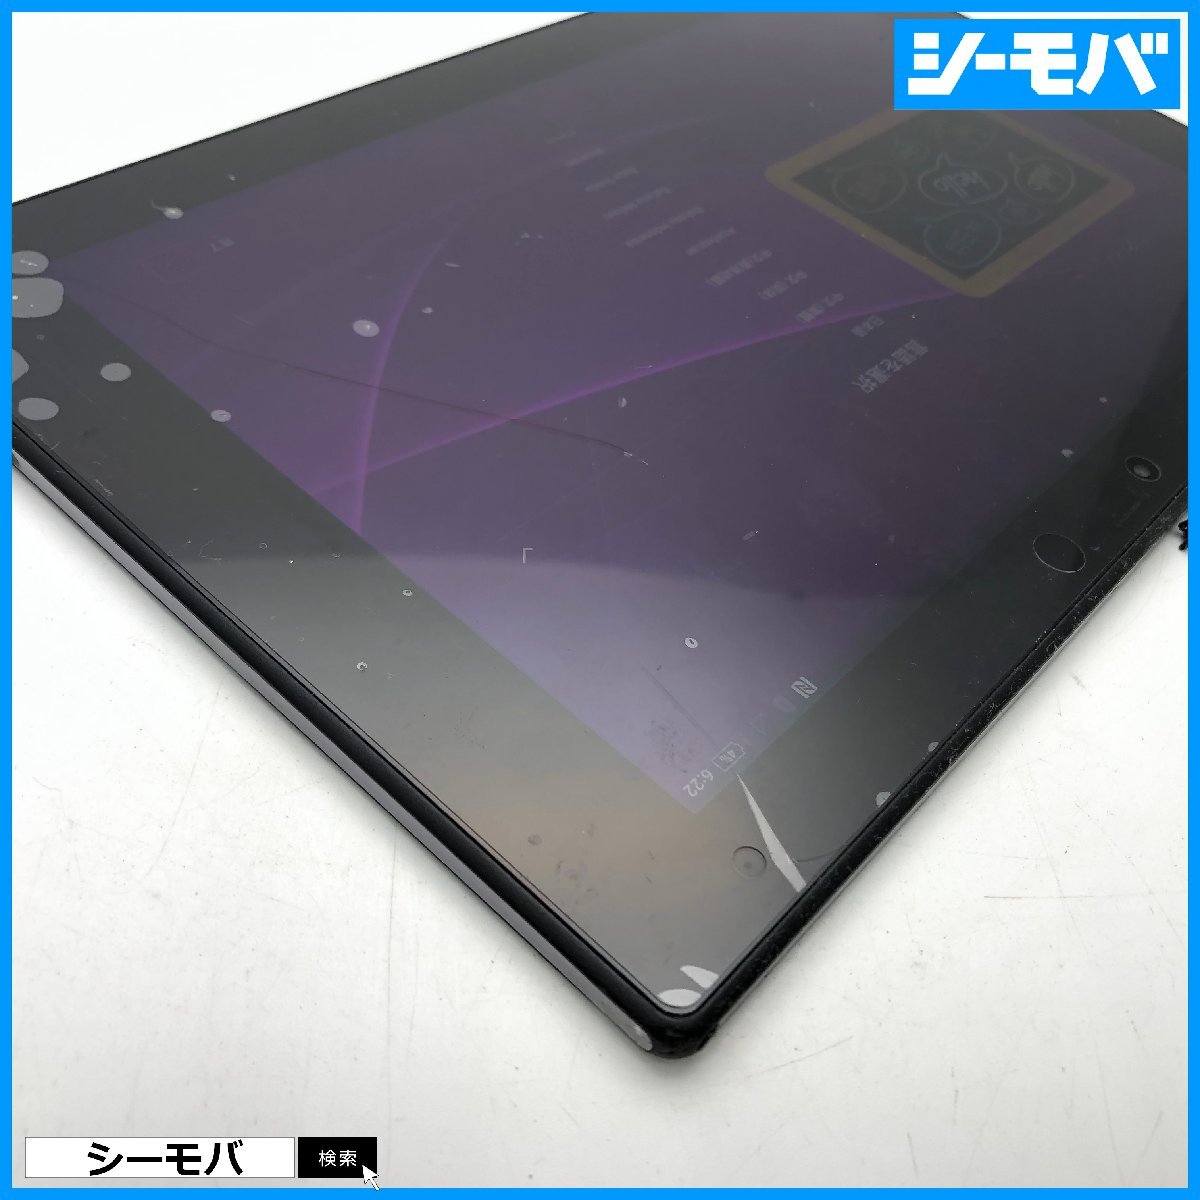 【ジャンク通電リセット済】au Xperia Z2 Tablet SOT21エクスペリア タブレット android アンドロイド 画面割れ本体破損 RUUN13769の画像4